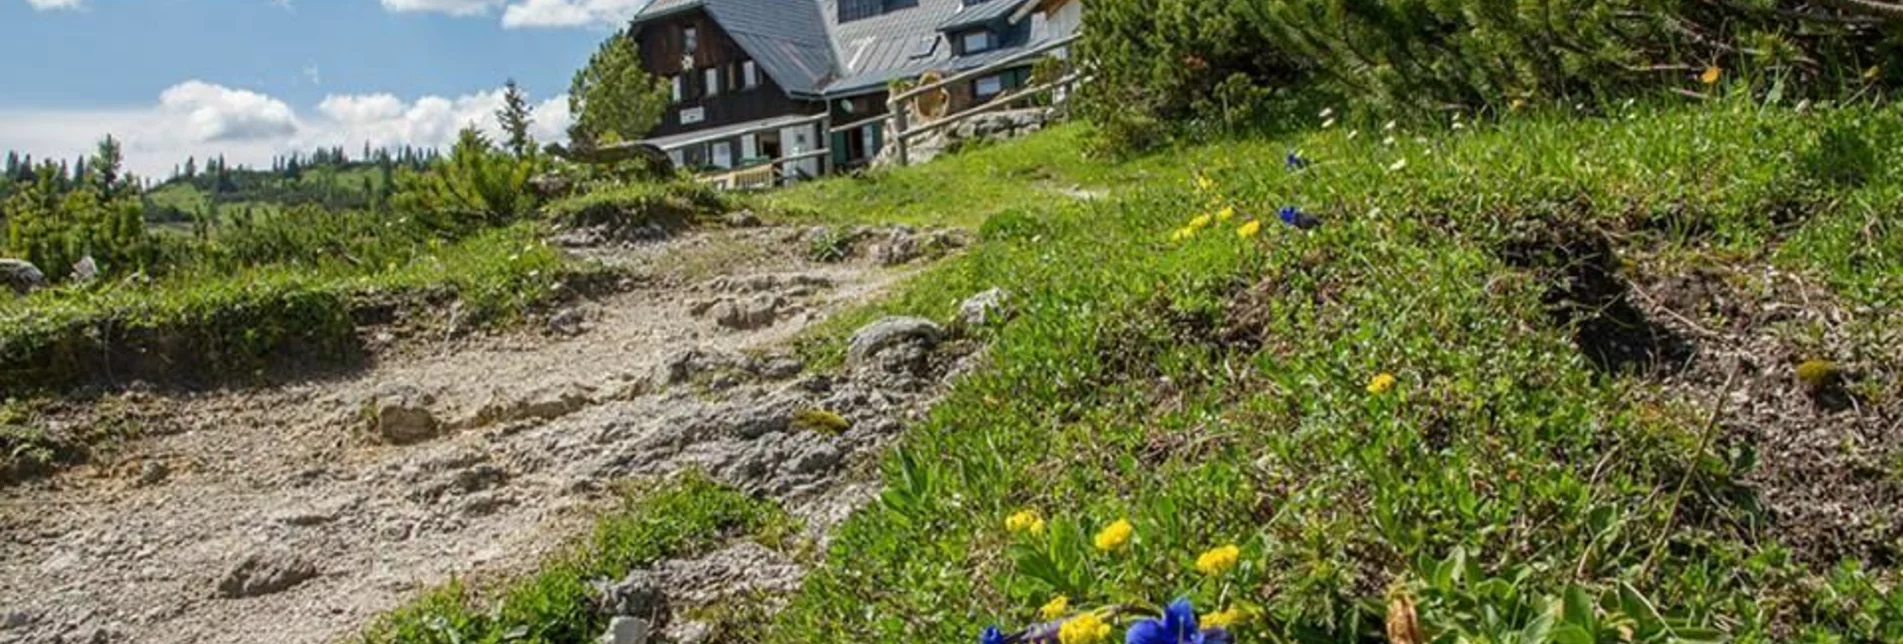 Wanderung Sonnschienalm von Wildalpen - Touren-Impression #1 | © Werner Maurer / Facebookgruppe Alpenregion Hochschwab 